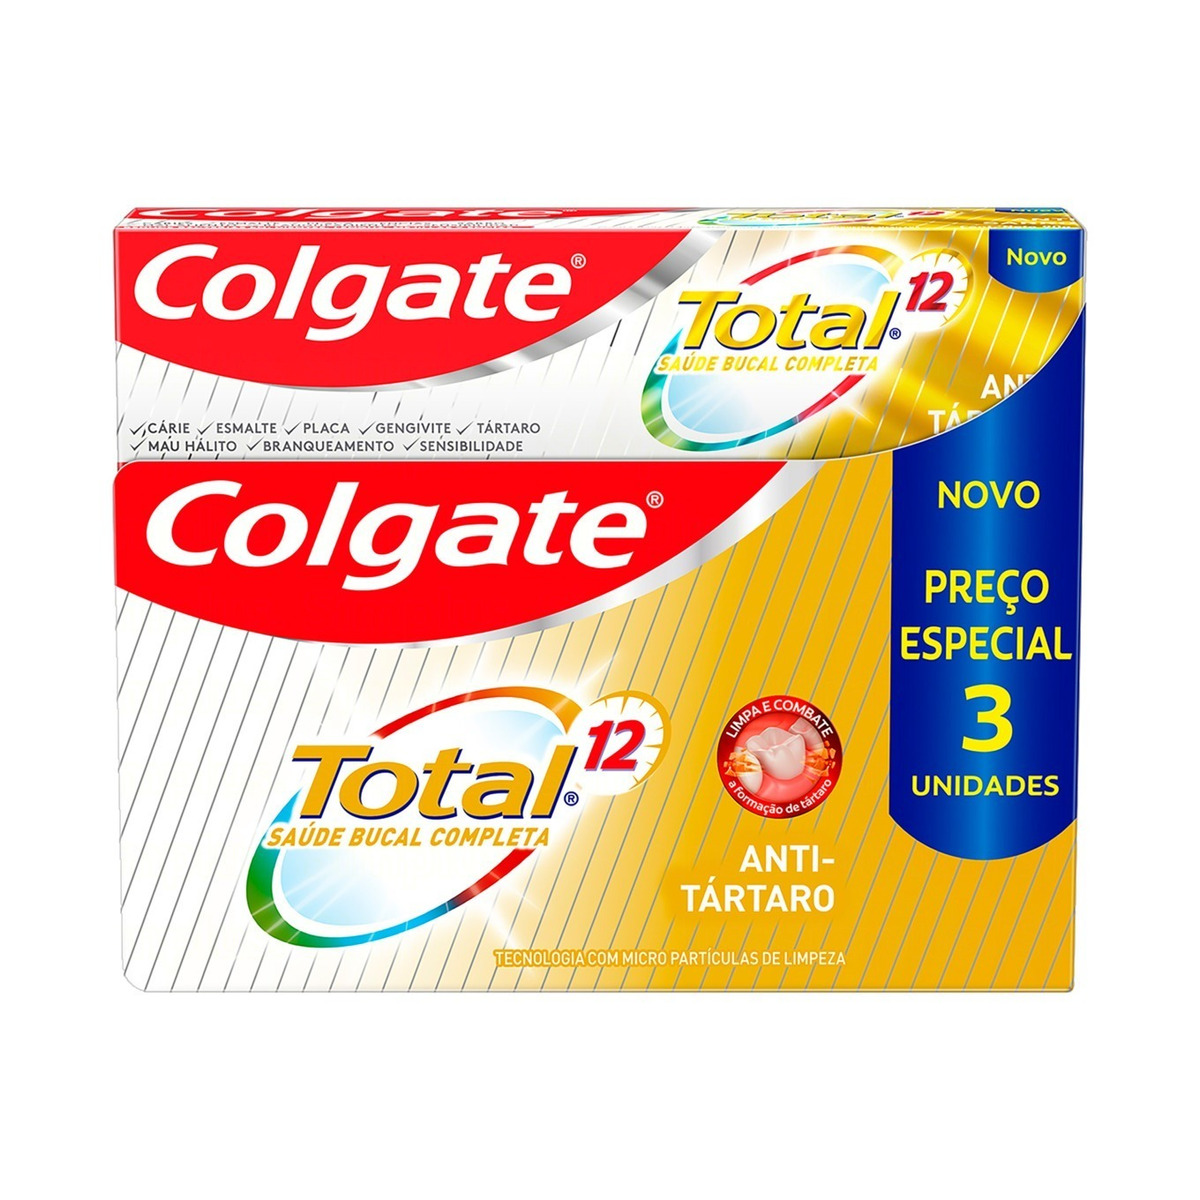 Pasta de dentes Colgate Total 12 Antitártaro  em creme pacote x 3 270 g